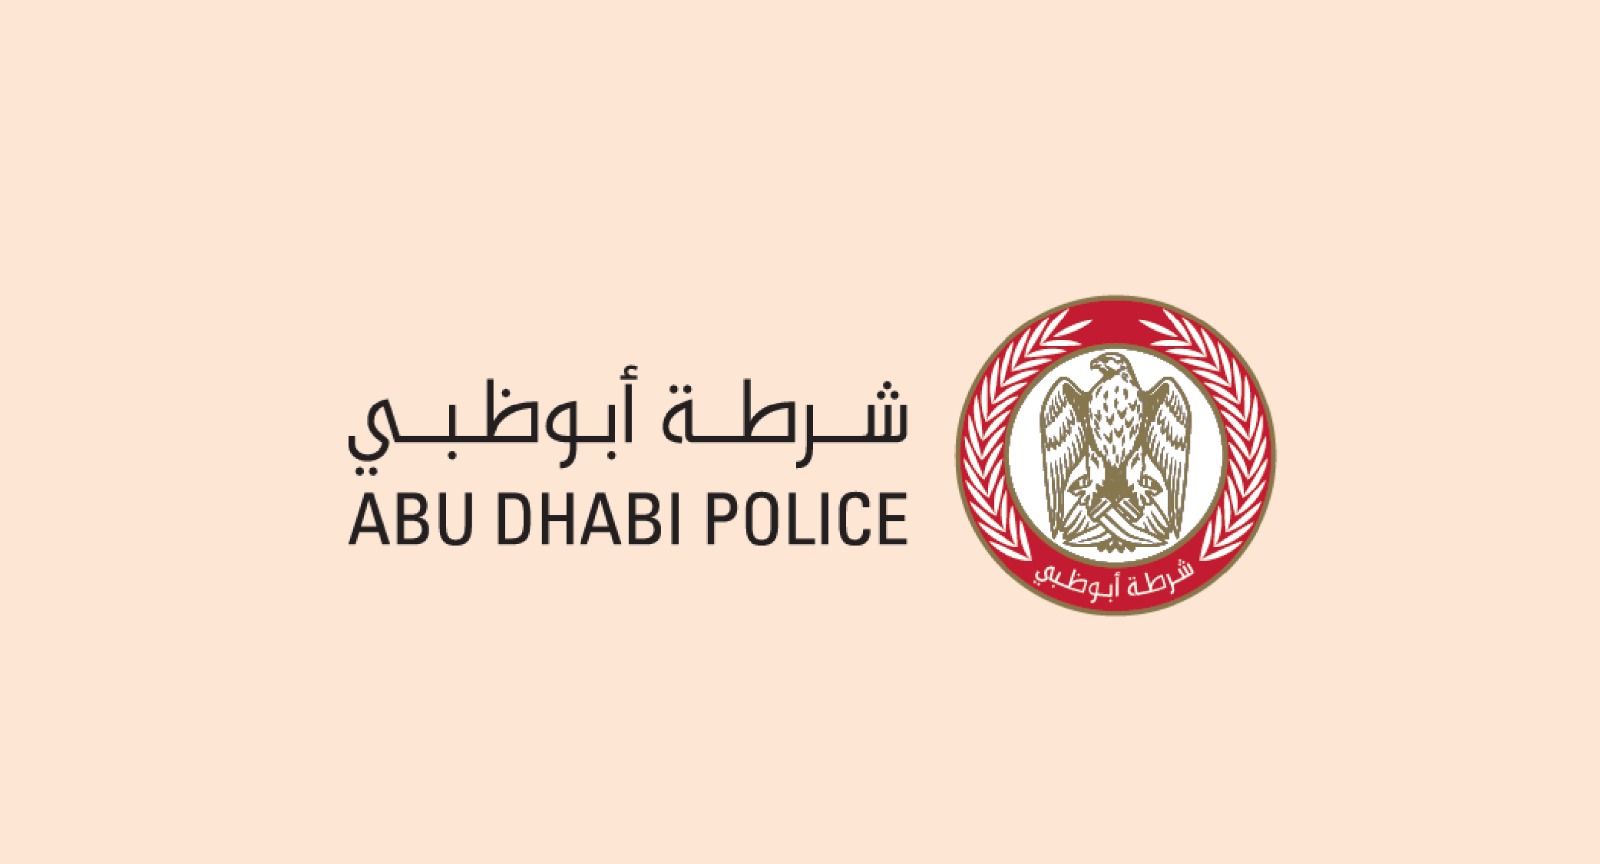 فيديو .. شرطة أبوظبي تحذر من أساليب الاحتيال الإلكتروني